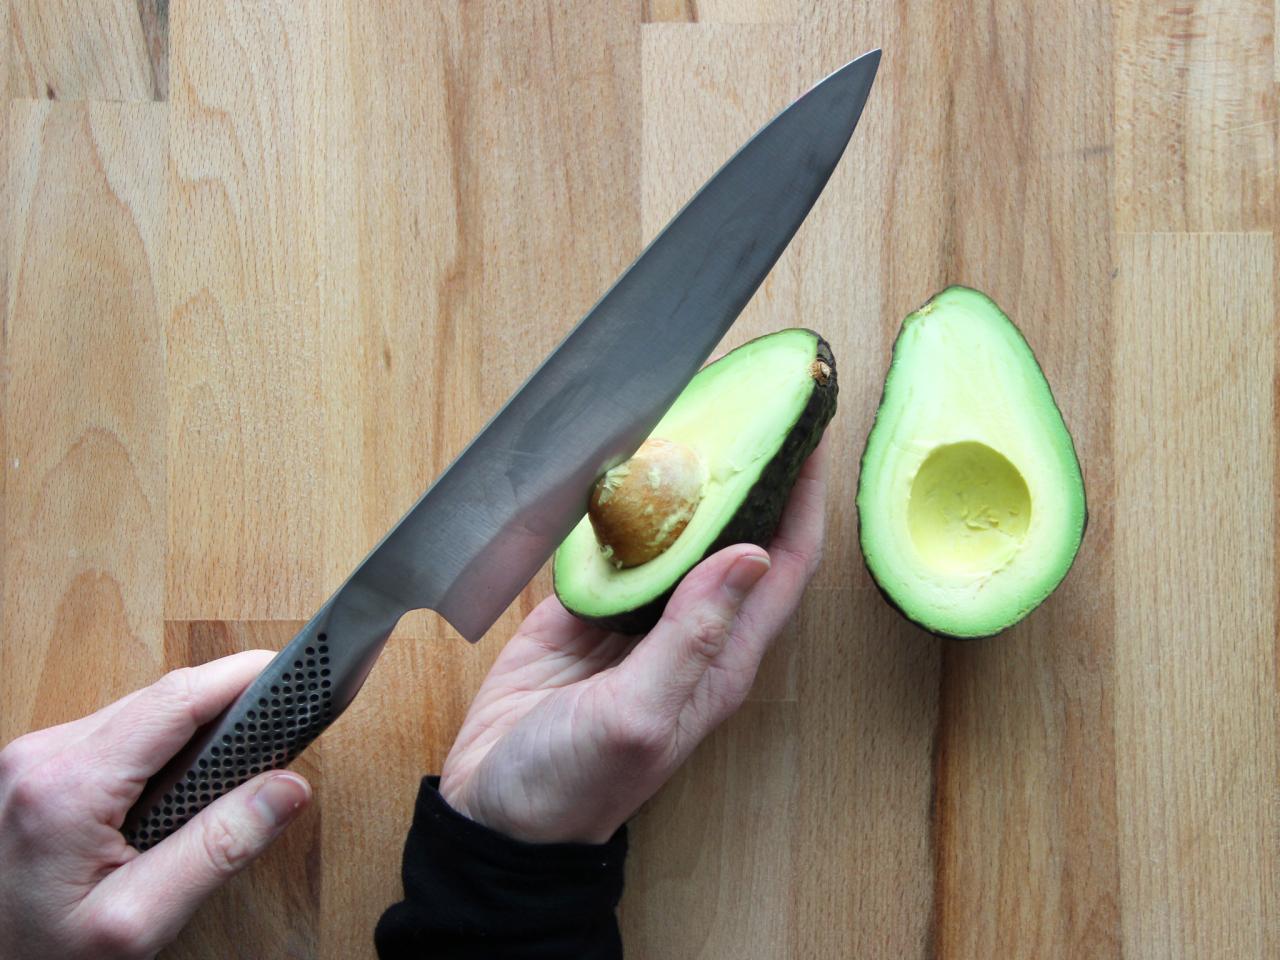 How do you keep avocados fresh?